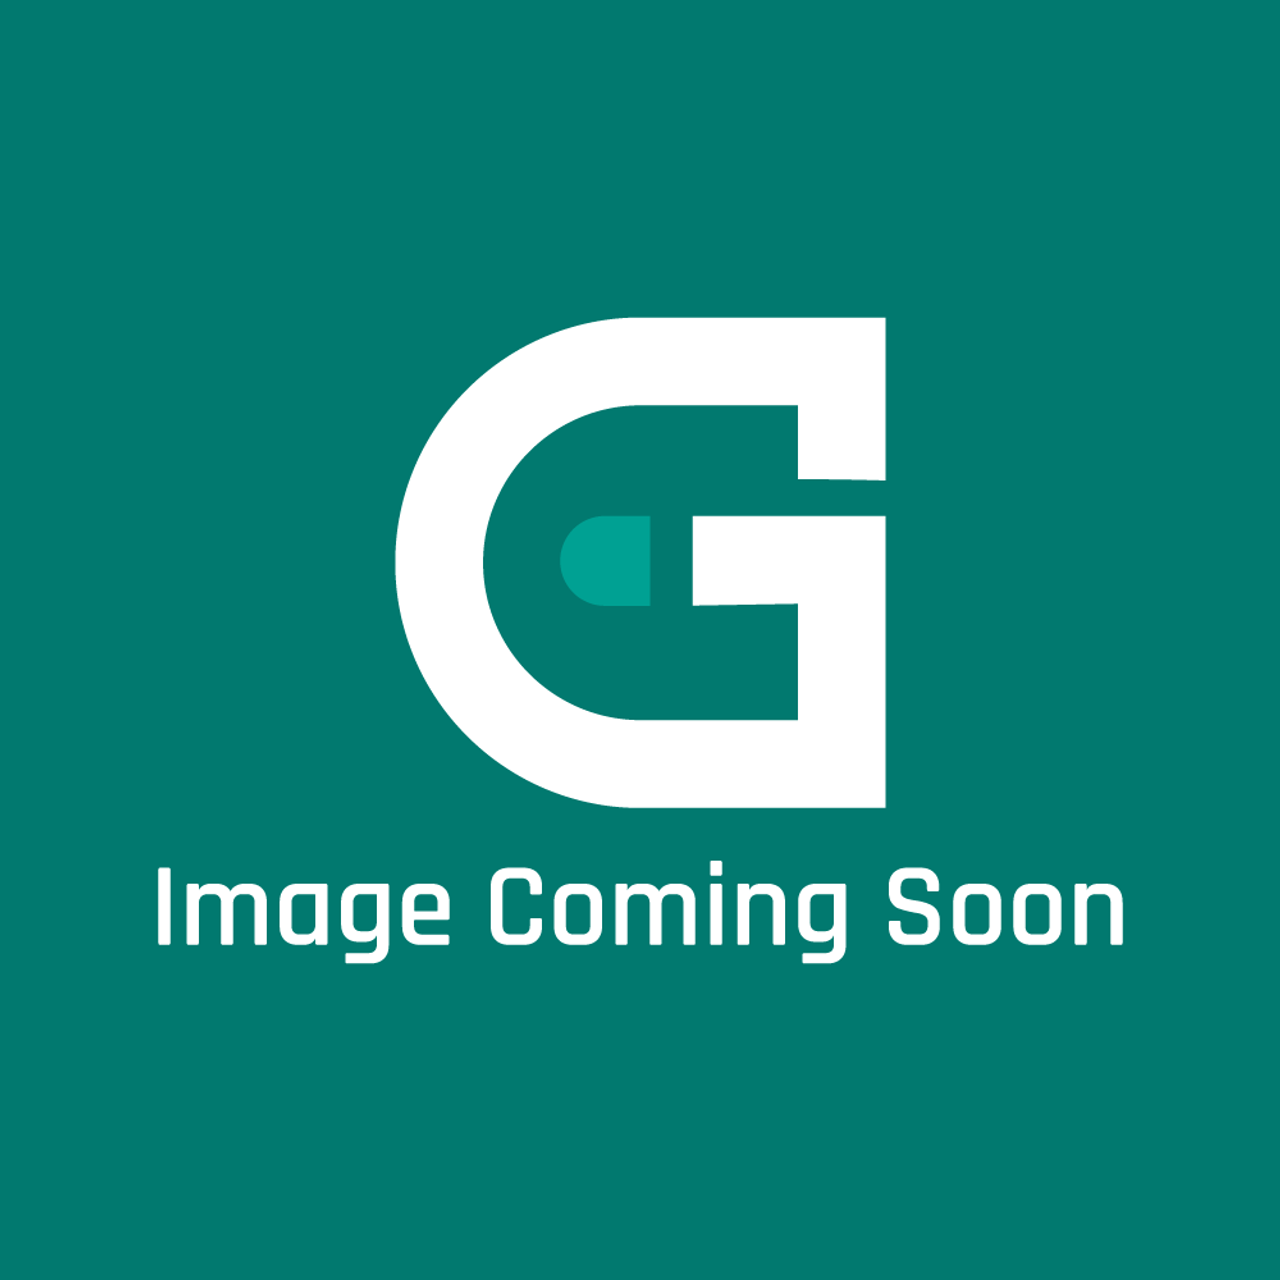 AGA Marvel R2333 - Solenoid V510/2 Mono Pj - Image Coming Soon!